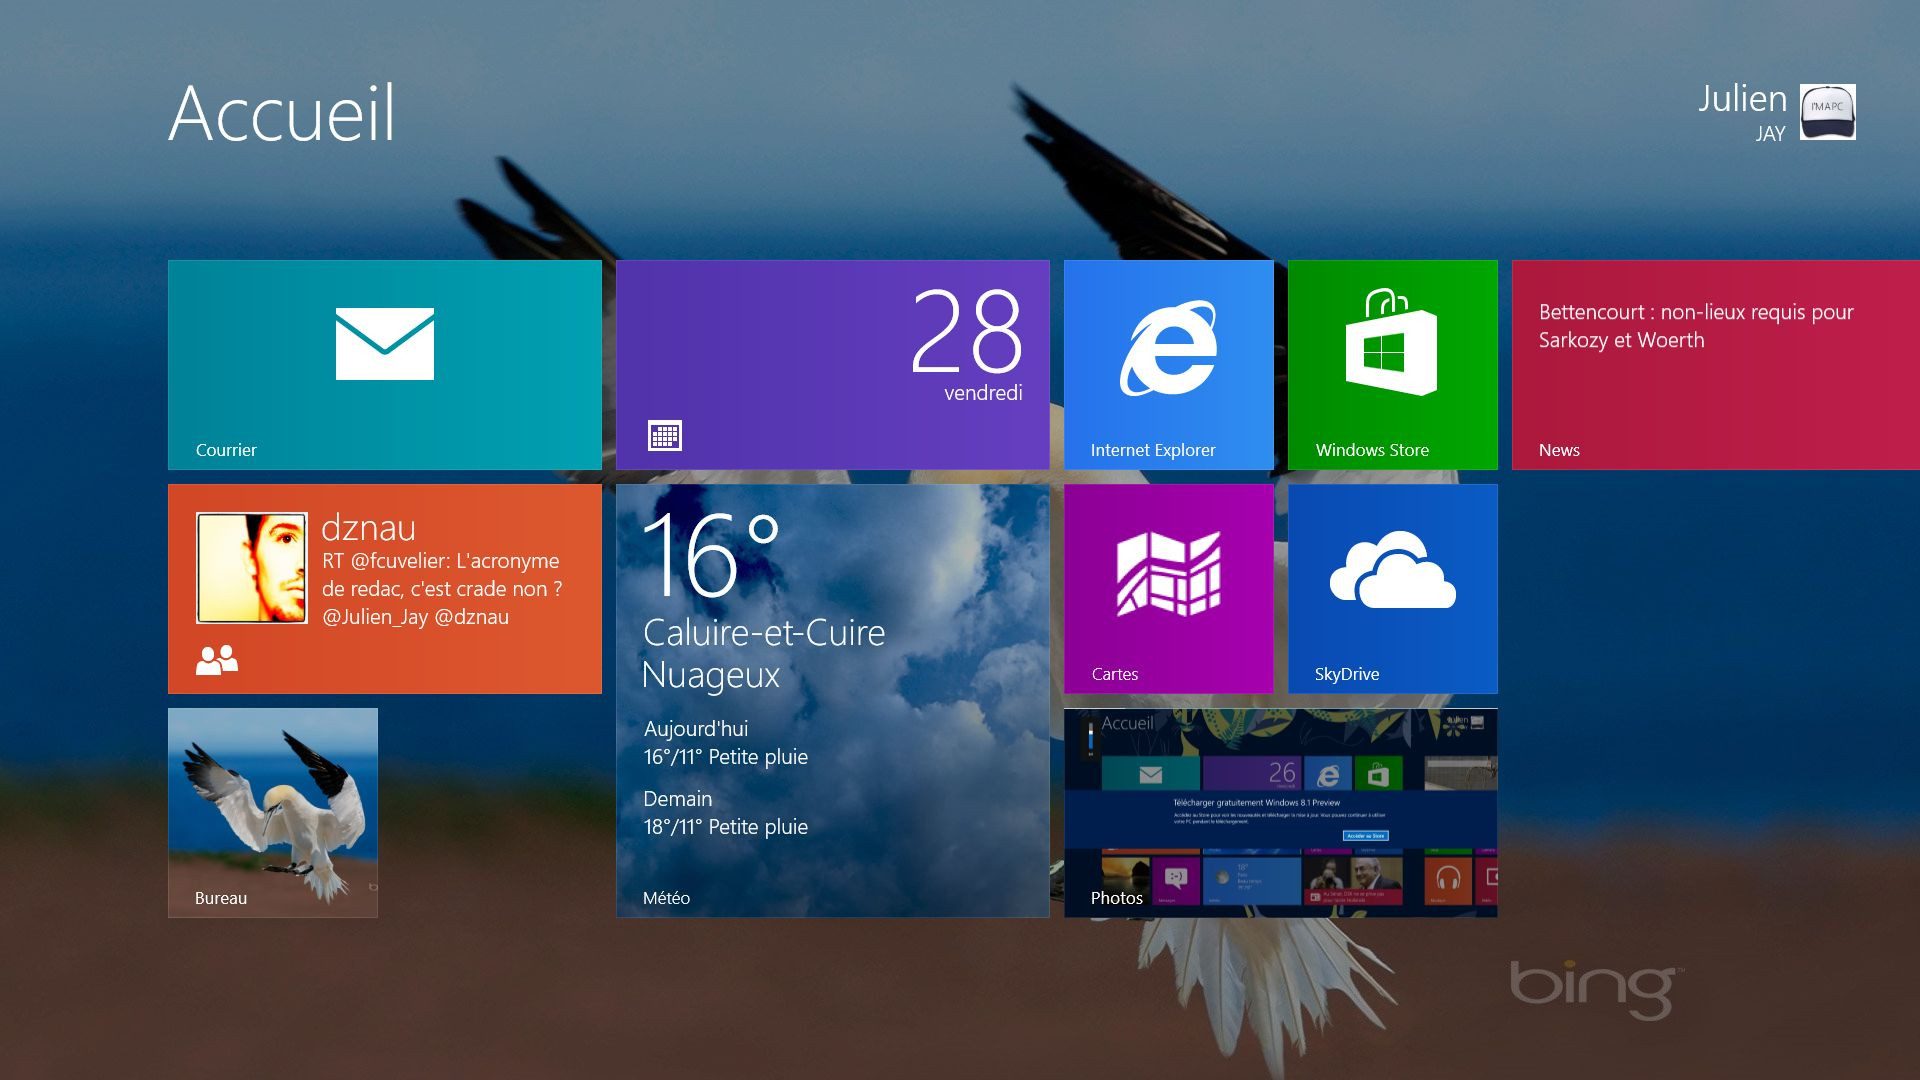 Windows 8.1: upphört med support i 6 månader, informerar Microsoft användarna